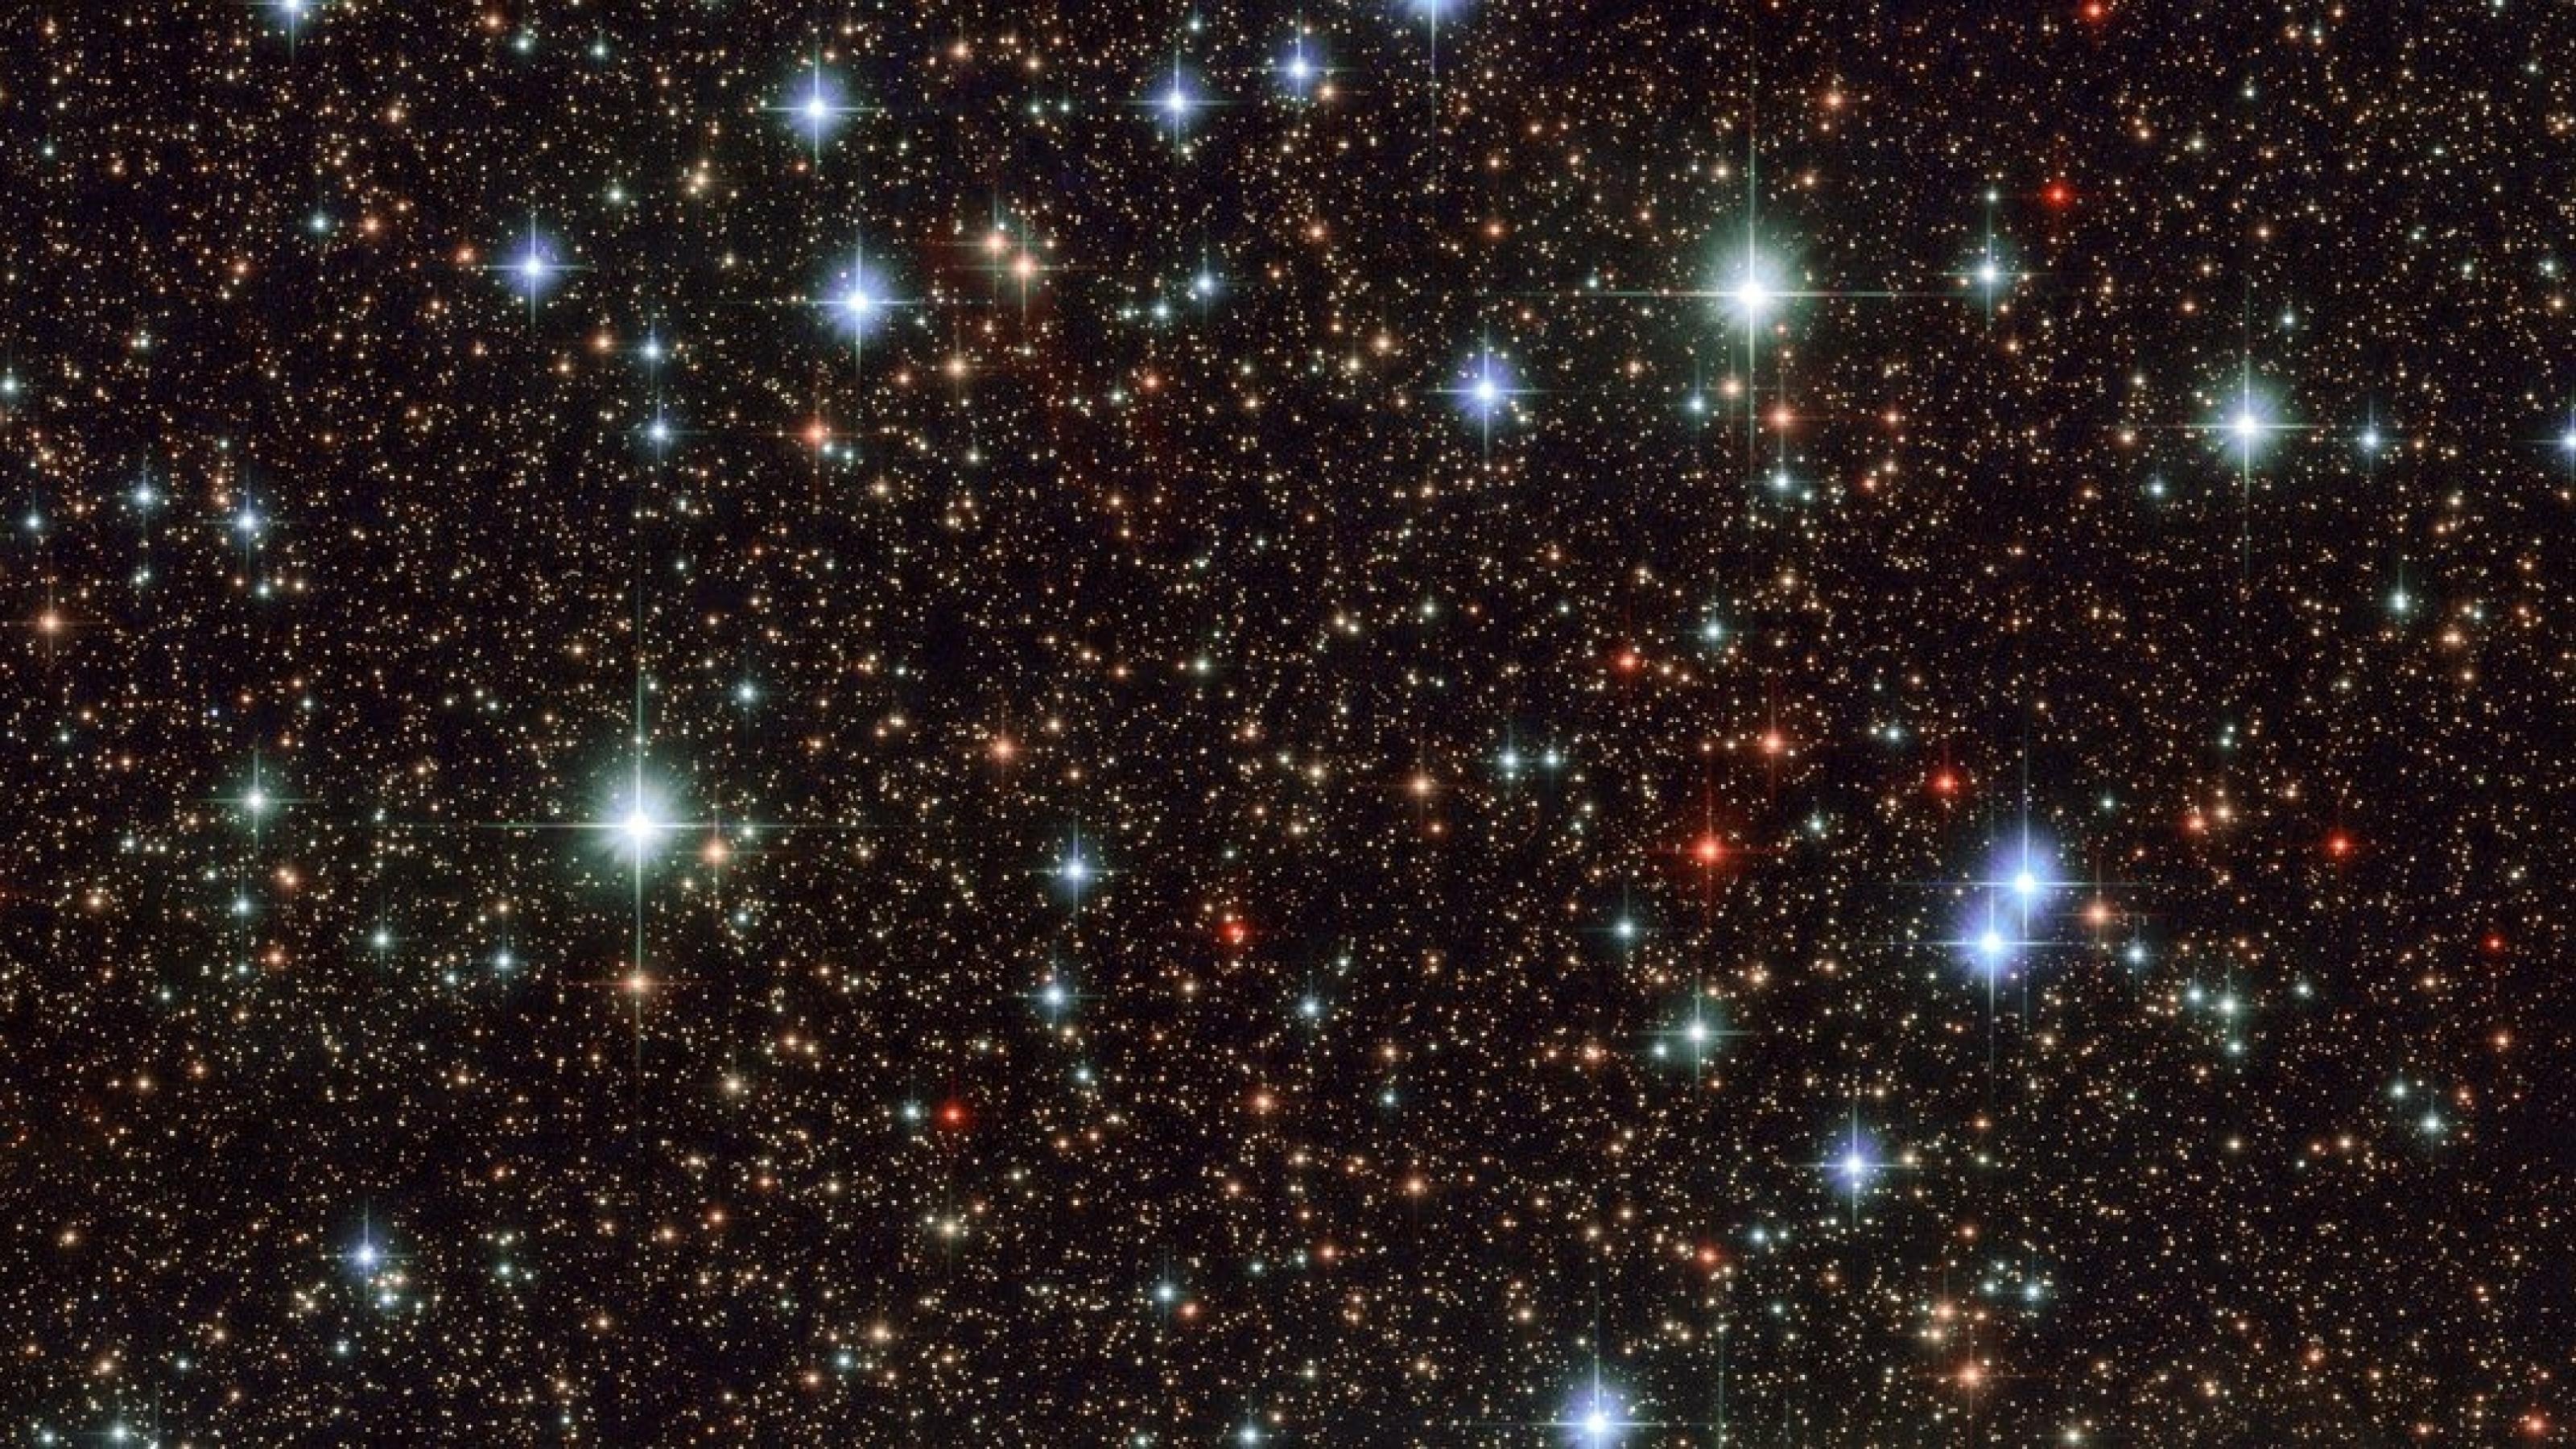 Ein winziger Himmelsausschnitt im Sternbild Schütze, aufgenommen mit dem Weltraumteleskop Hubble. Wir sehen nur einen Bruchteil der sternenreichen Milchstraße – und stellen uns vor, wie viele dieser Sterne wohl von Planeten umkreist werden und auf wie vielen von ihnen wohl Lebensformen denkbar sind.